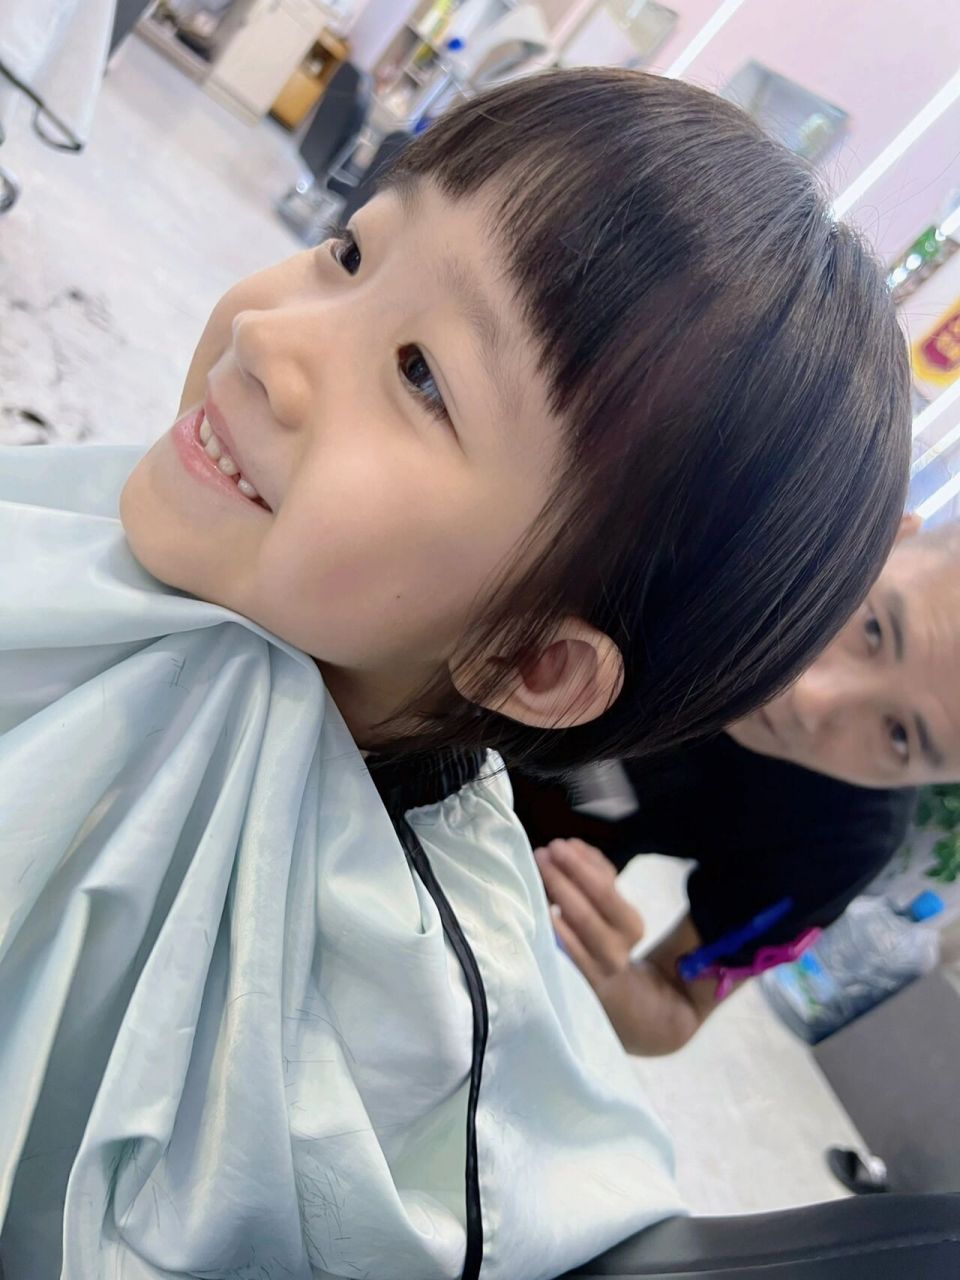 儿童女短发 满足小女生剪短头发的冲动,可可爱爱 你更喜欢长发还是